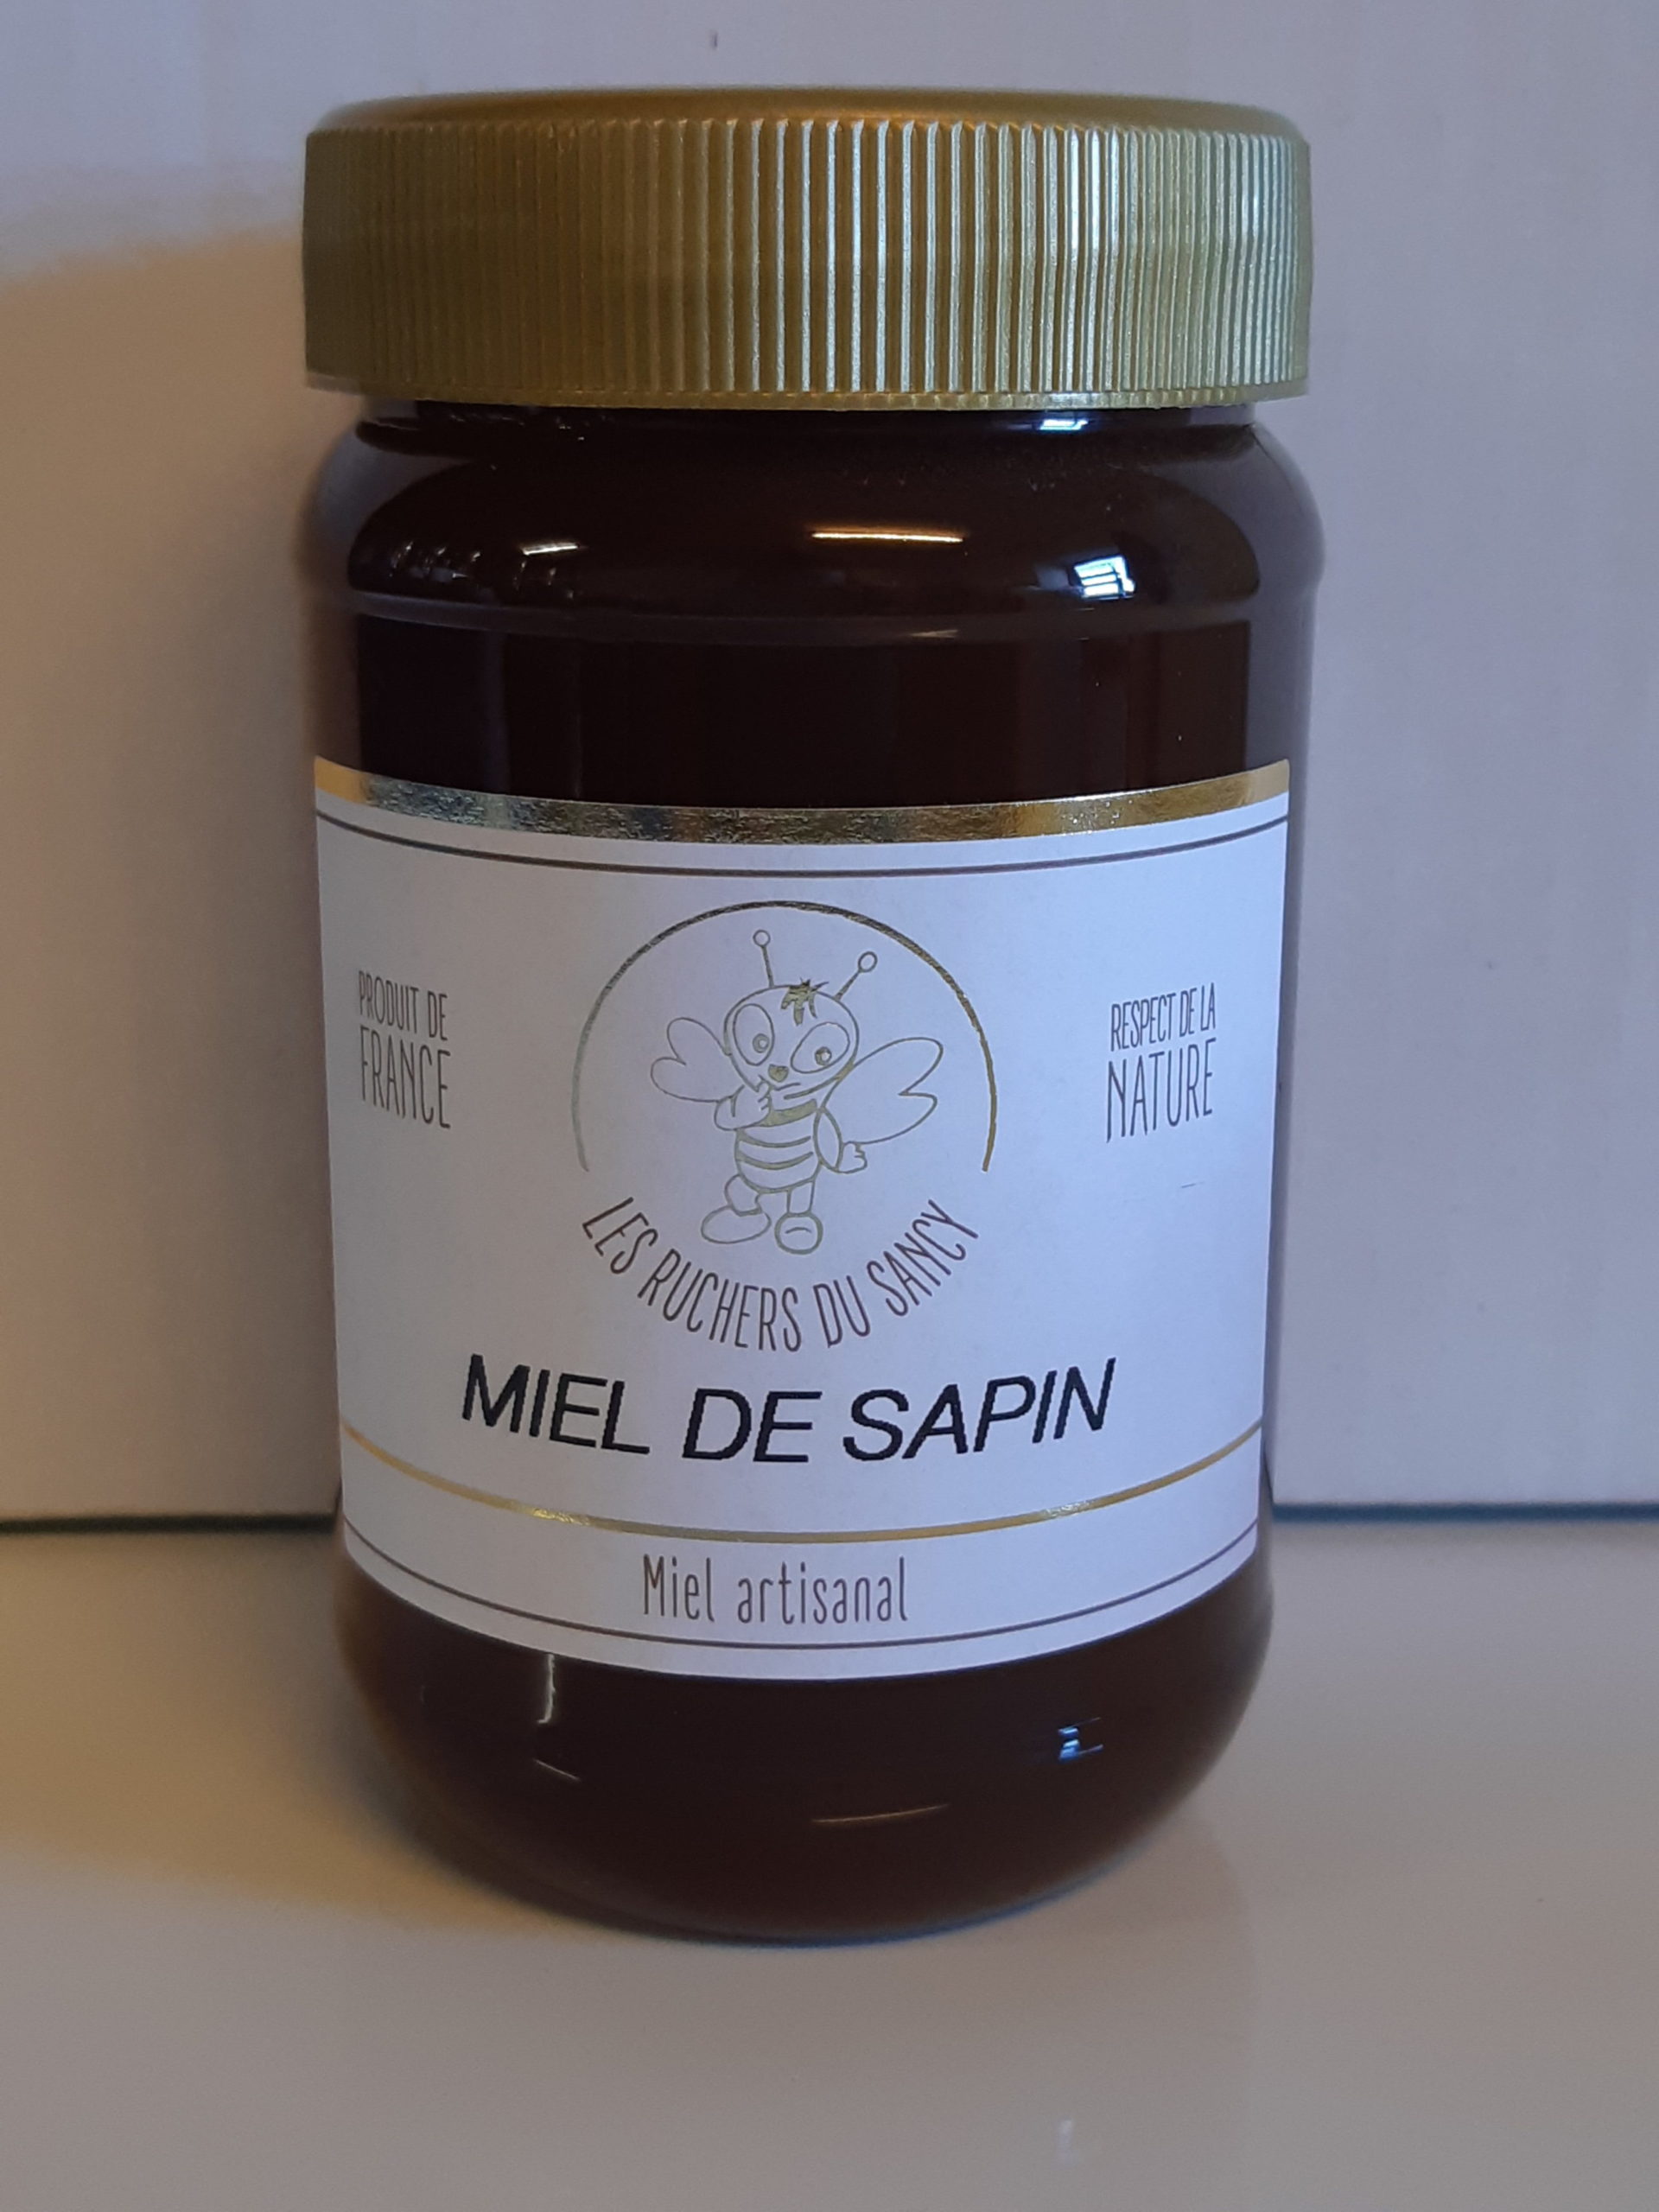 Bonbon au miel Sapin - Ruchers du Sancy - Producteur de Miel - La